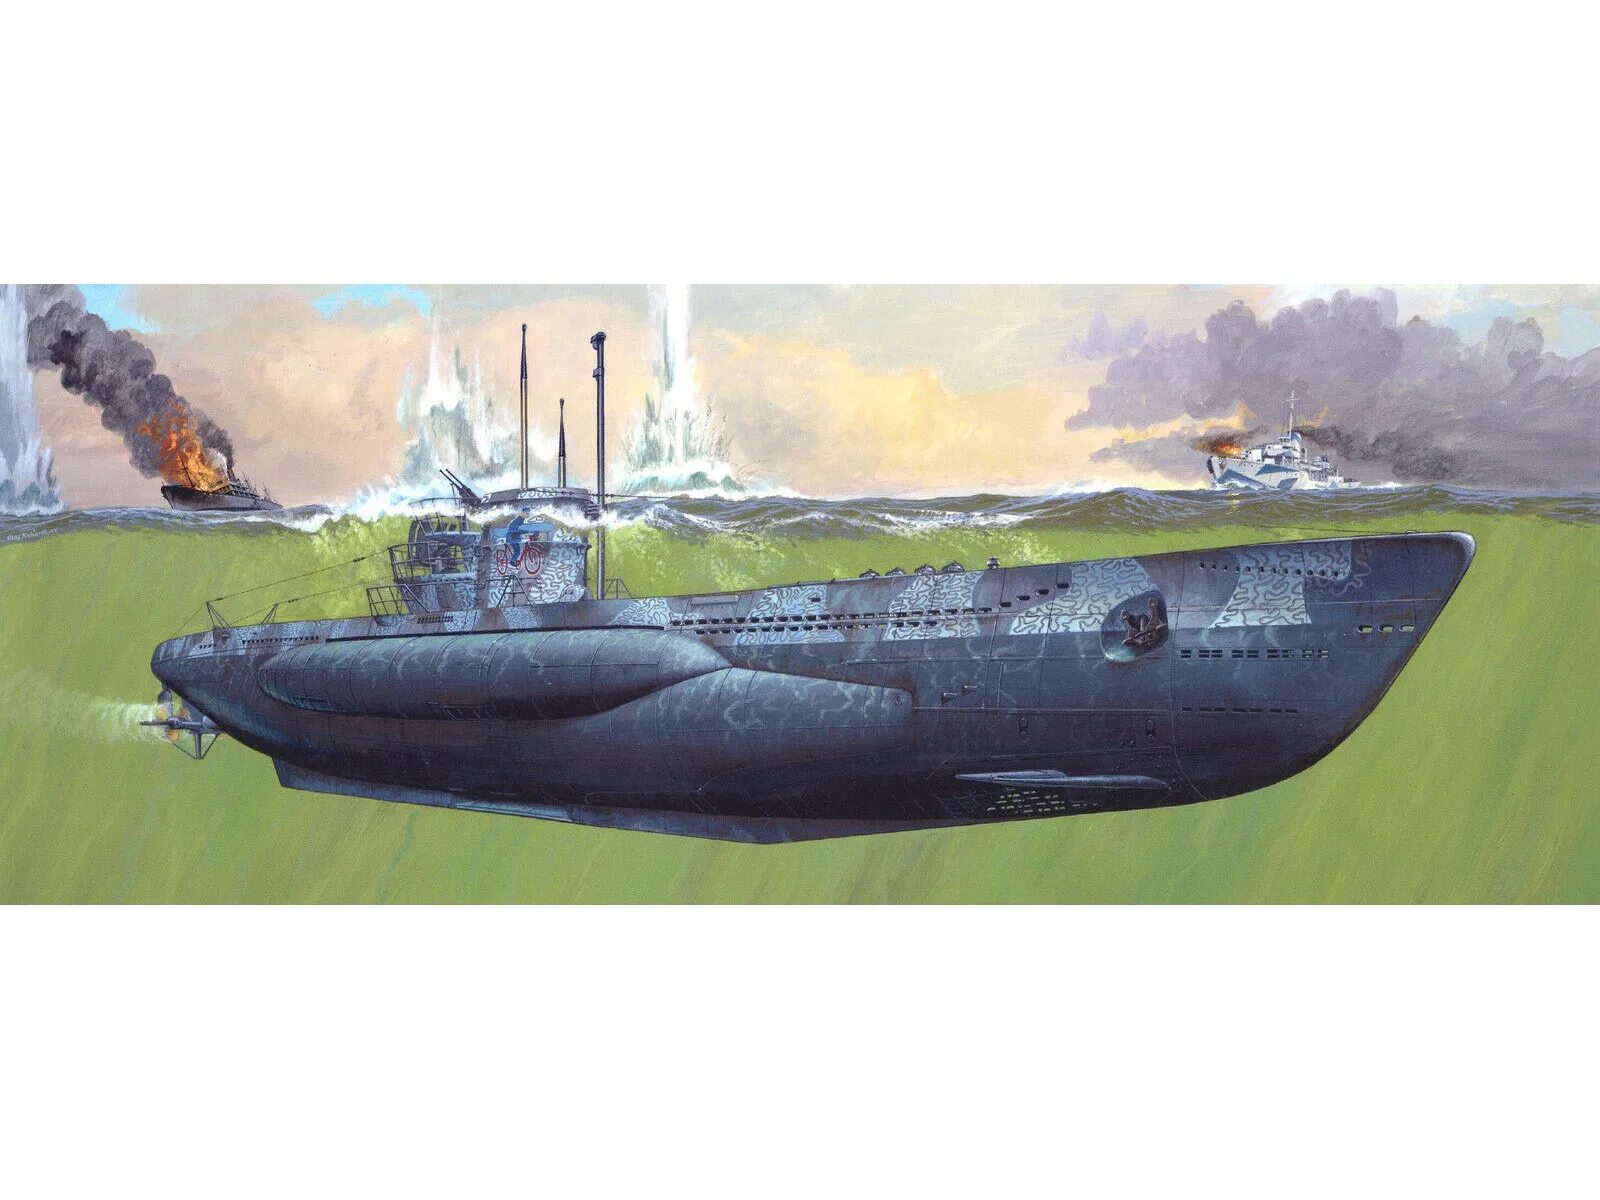 Тип 7 77. 05045 Revell немецкая подводная лодка VIIC/41 Atlantic Version (1:72). U-Boot Typ IX C/40. U 505 1/72 Revell. 05100 Revell немецкая подводная лодка Type VII C/41 Atlantic Version (1:144).